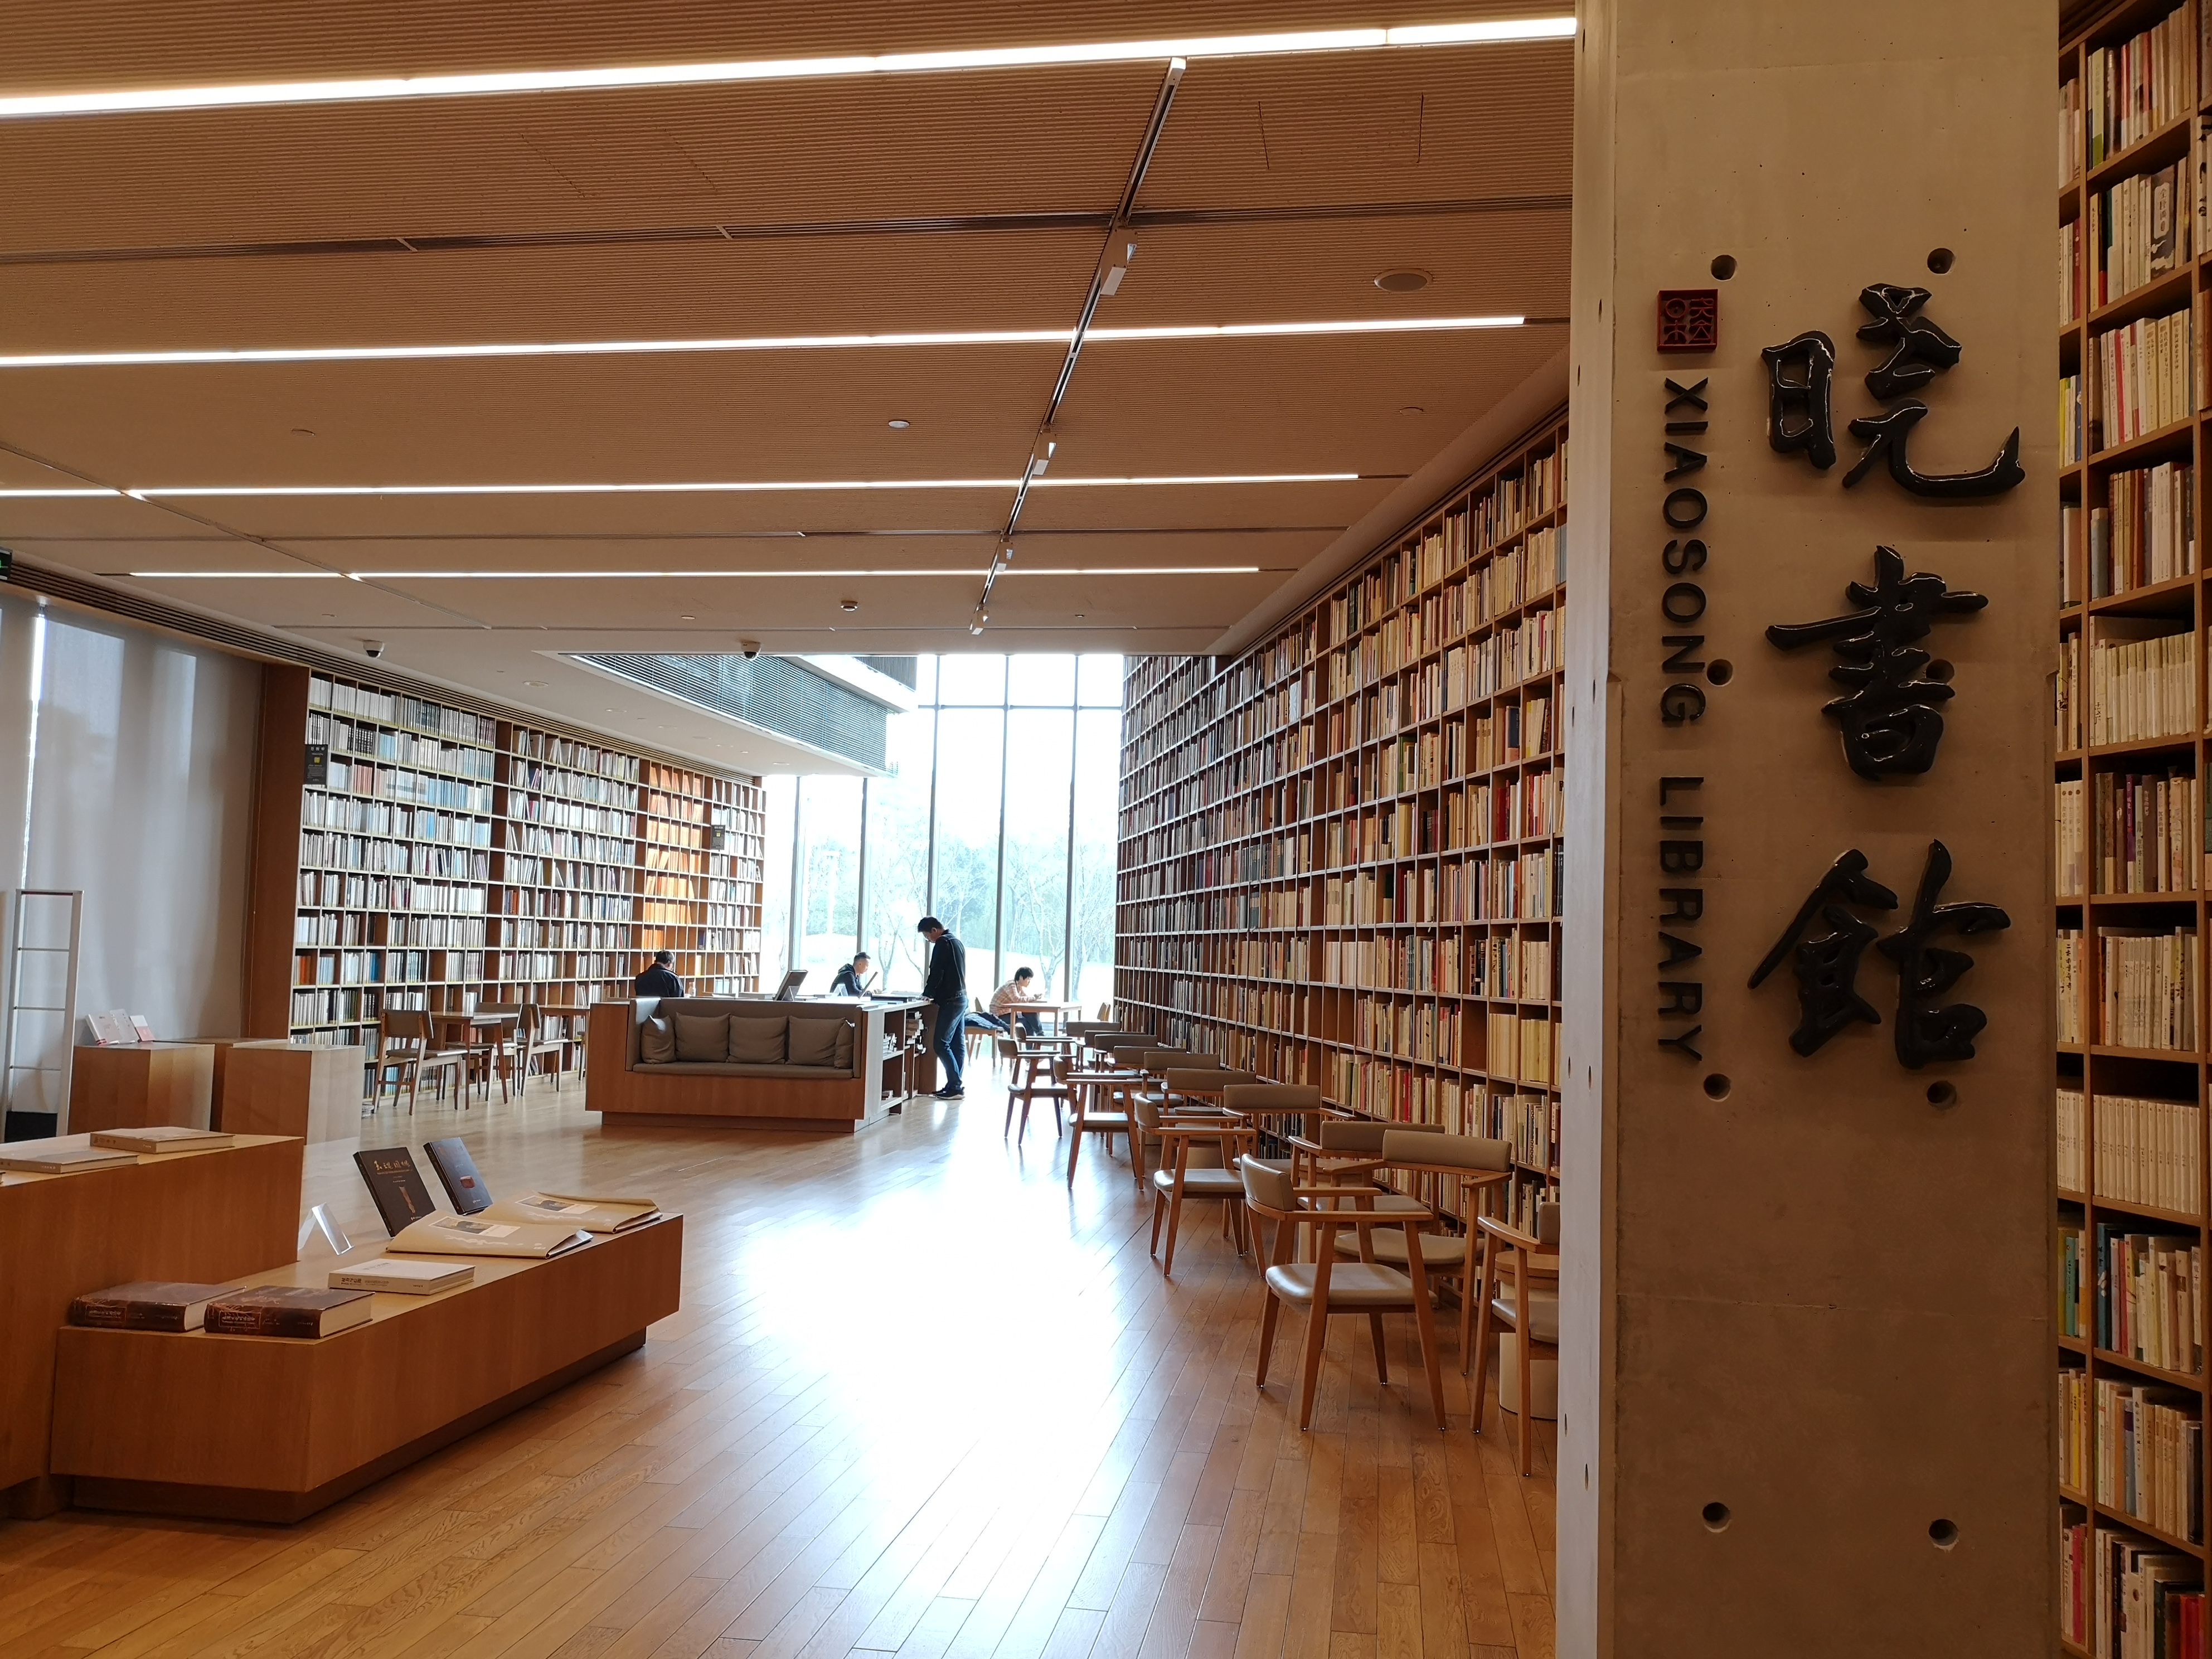 良渚晓书馆图片